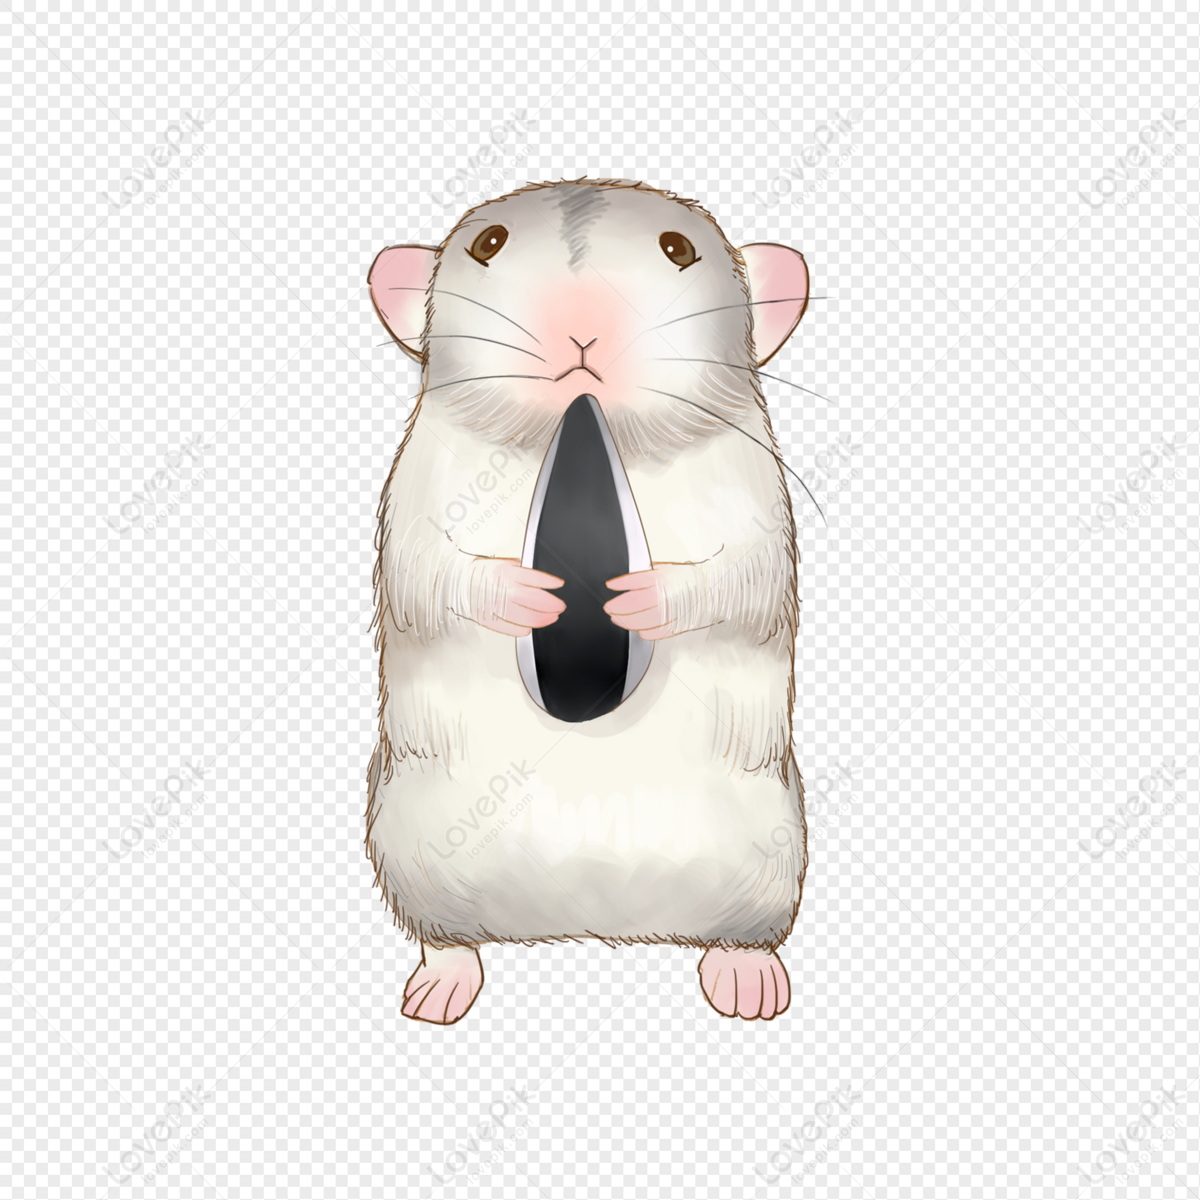 Chuột Hamster - 12 điều thú vị - Hỏi Đáp Thú y